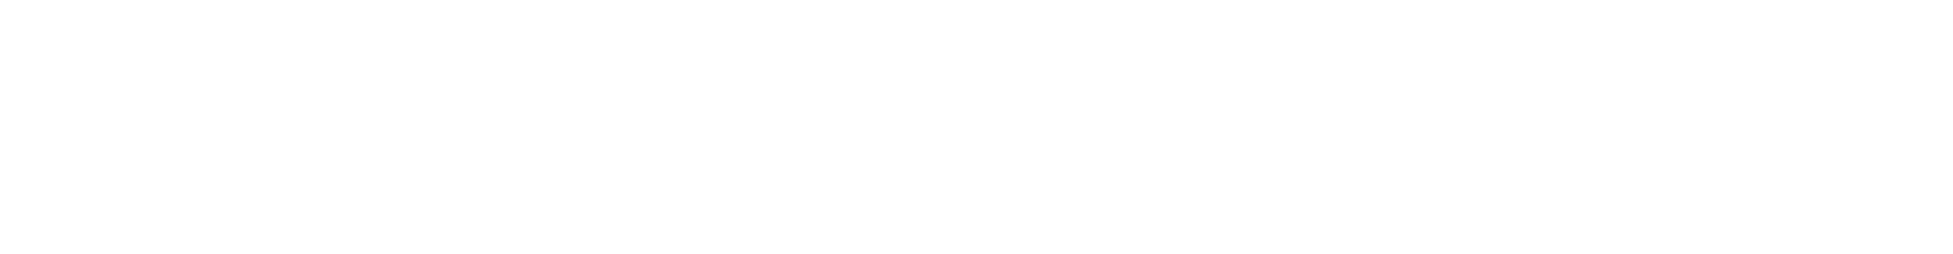 Hikvision Logo white-2-2